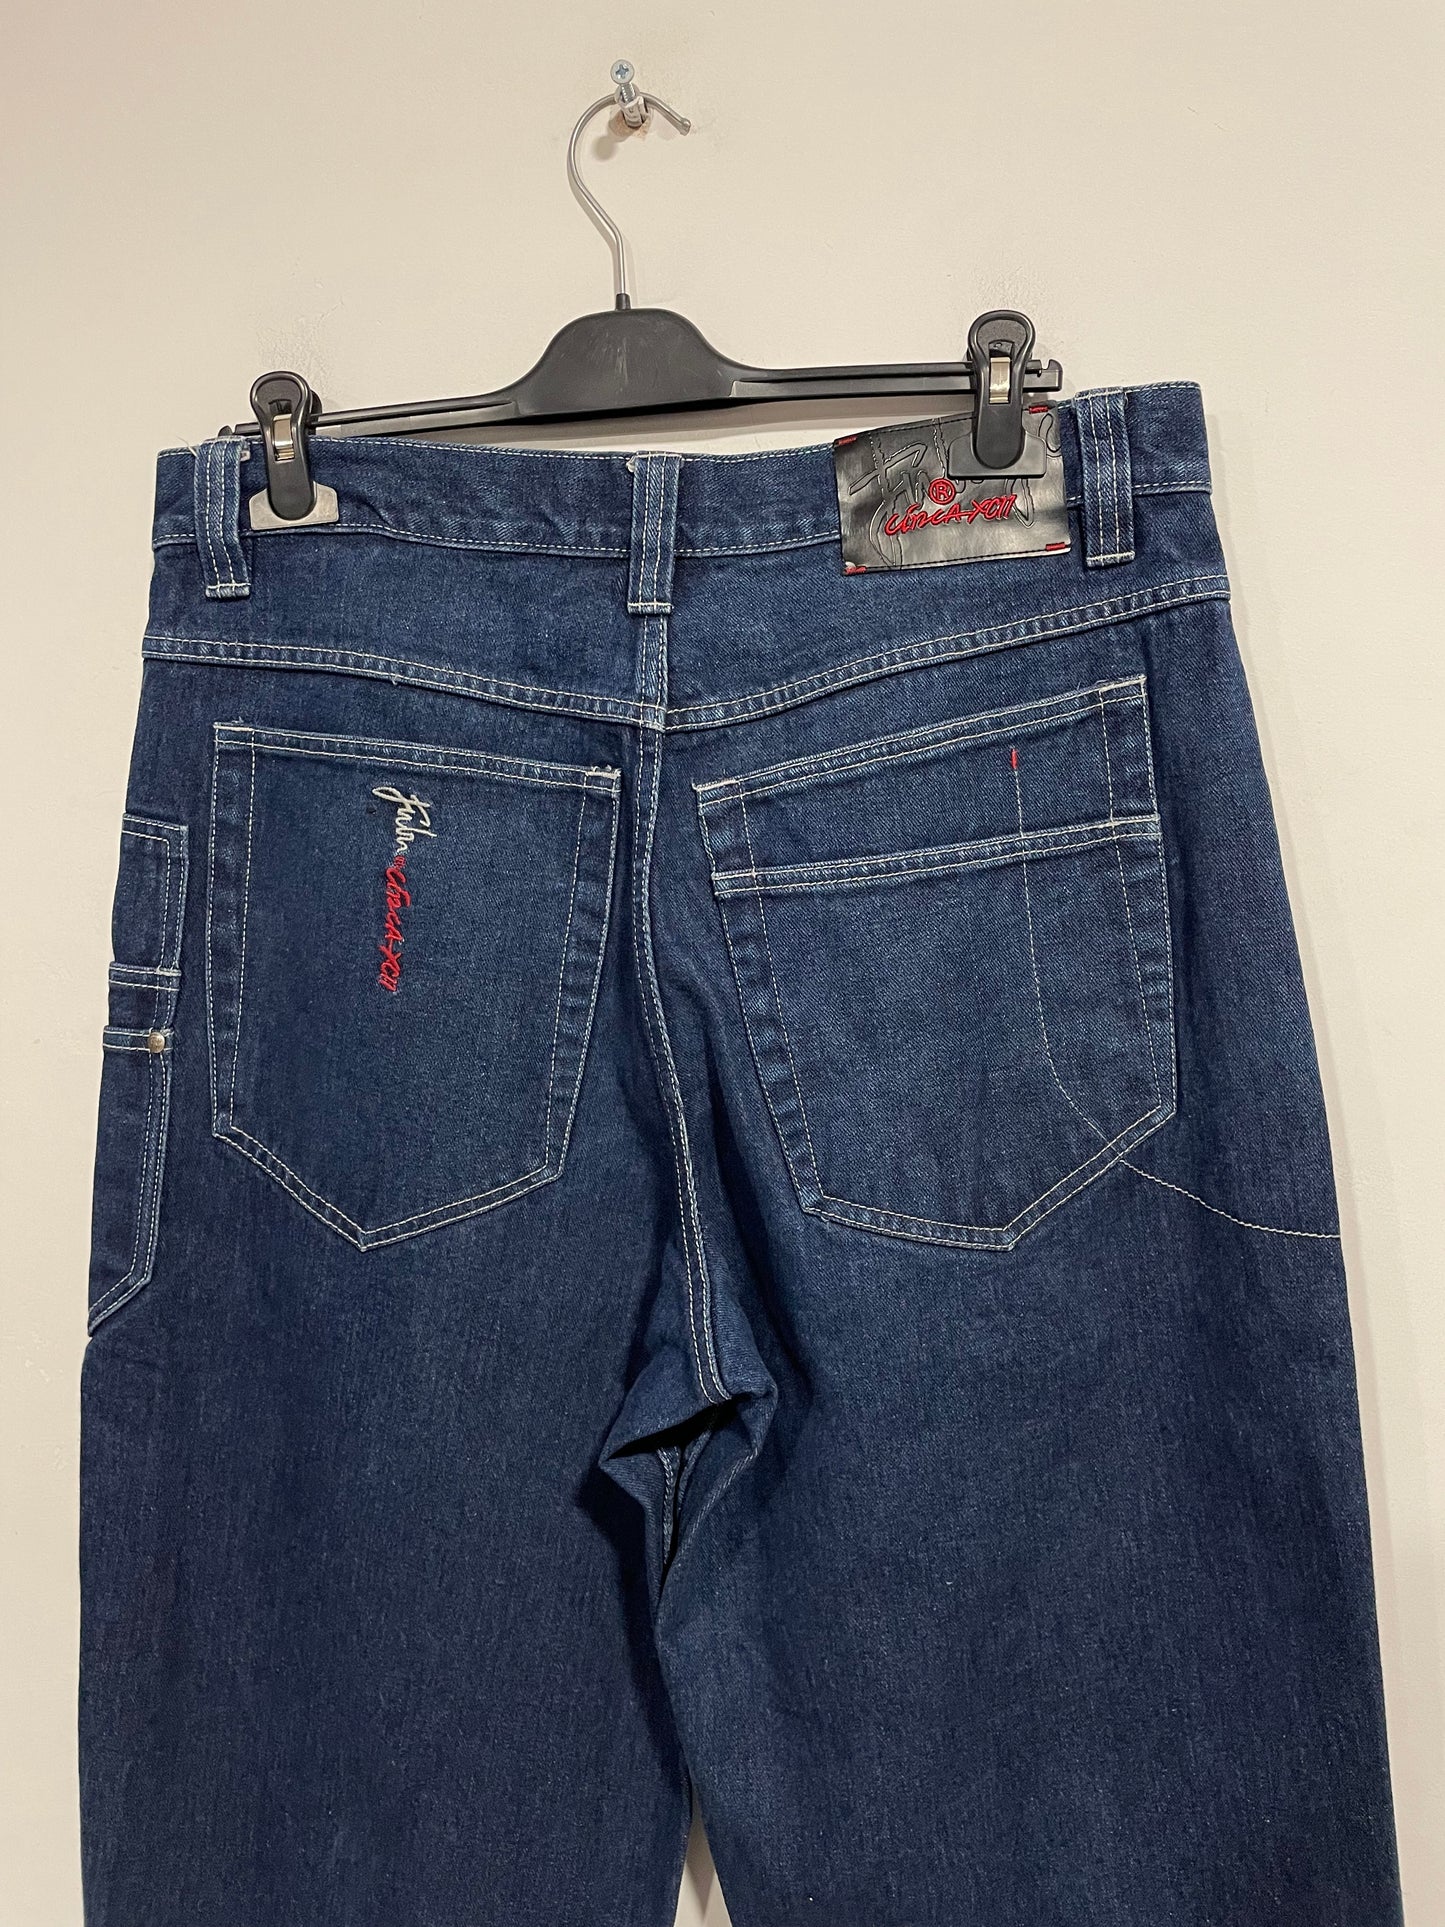 Raro jeans baggy FUBU Circa anni 90 (D538)